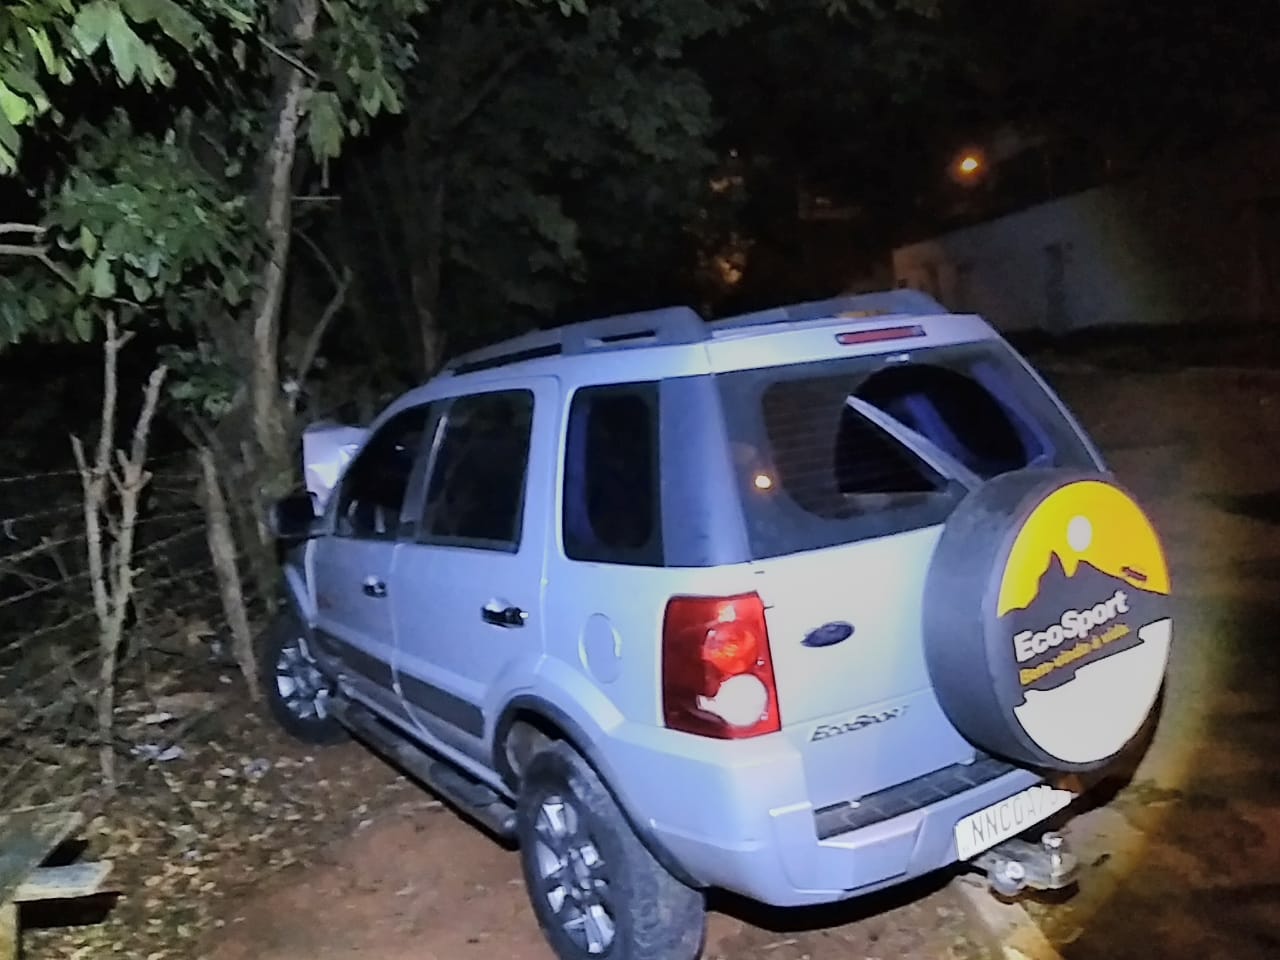 Motorista fica em estado grave após bater contra poste, em Goiânia